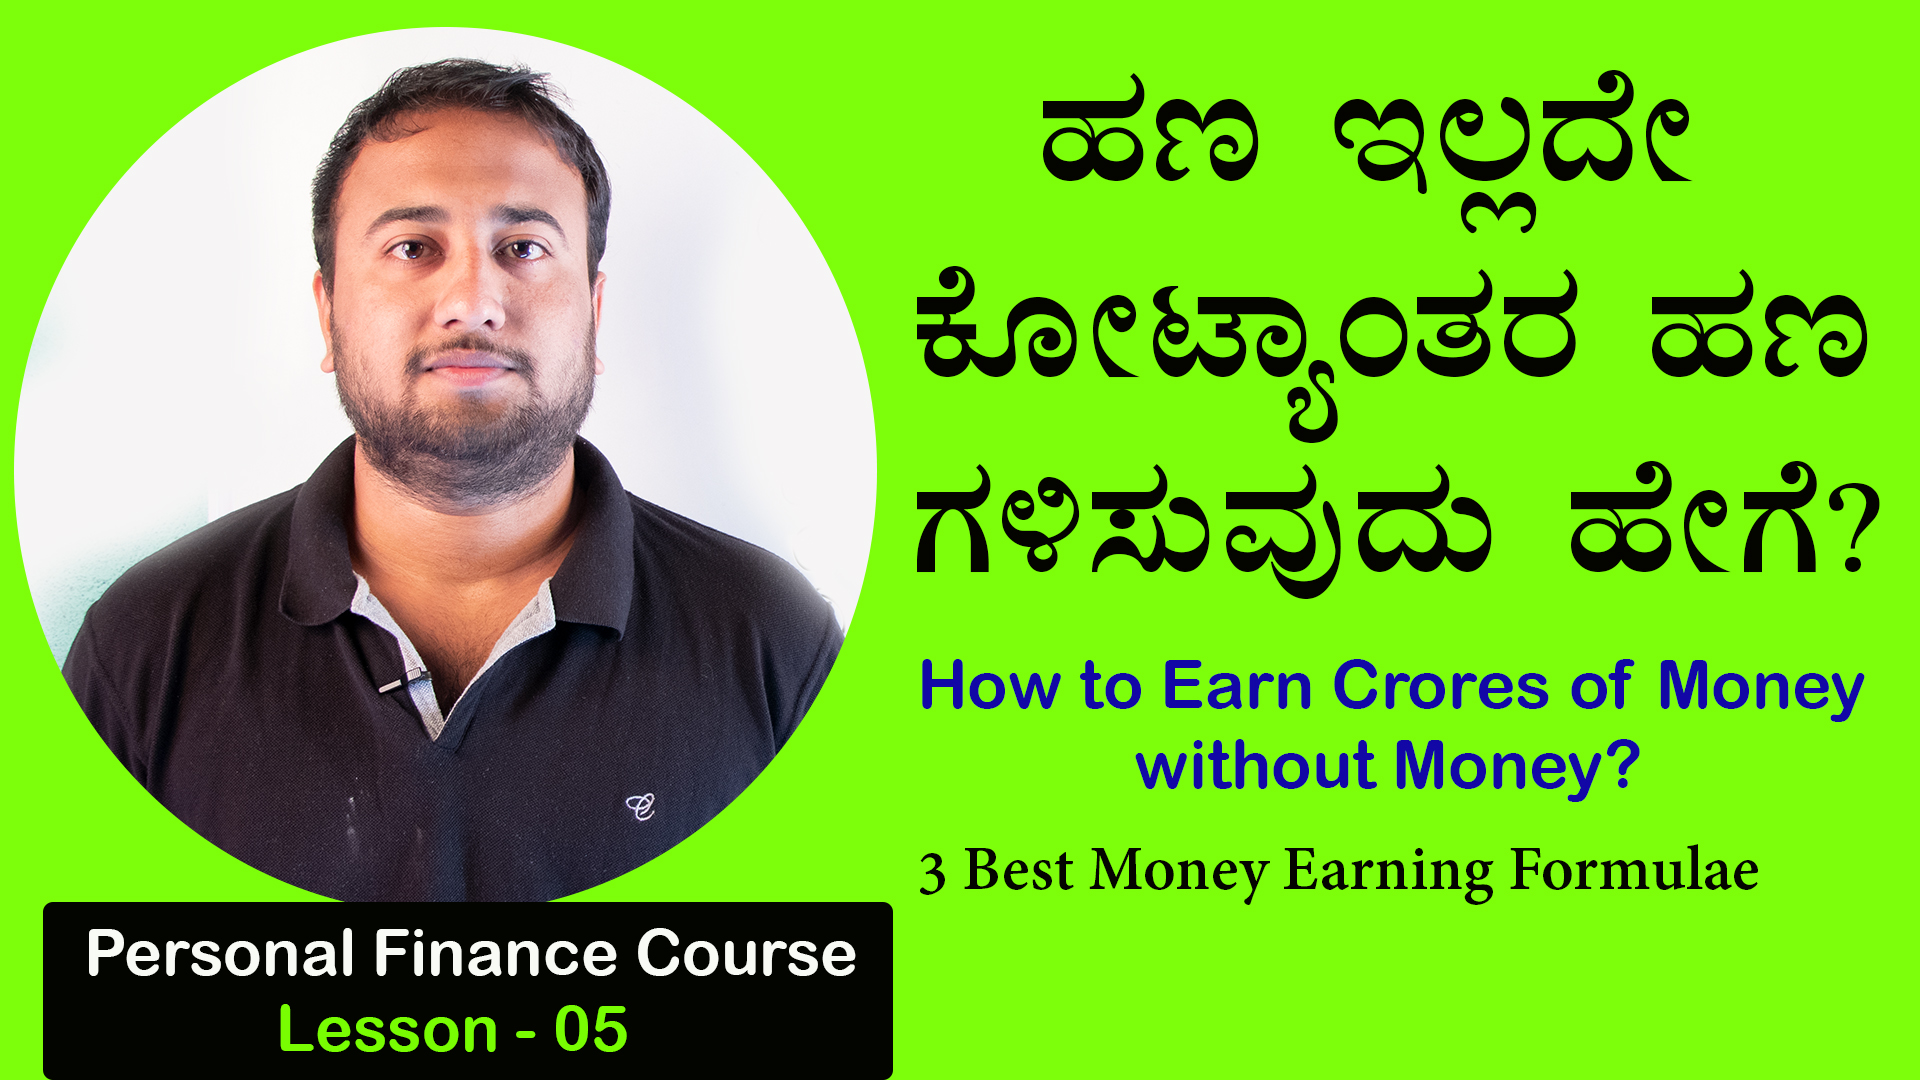 ಹಣ ಇಲ್ಲದೇ ಕೋಟ್ಯಾಂತರ ಹಣ ಗಳಿಸುವುದು ಹೇಗೆ? How to Earn Crores of Money without Money?